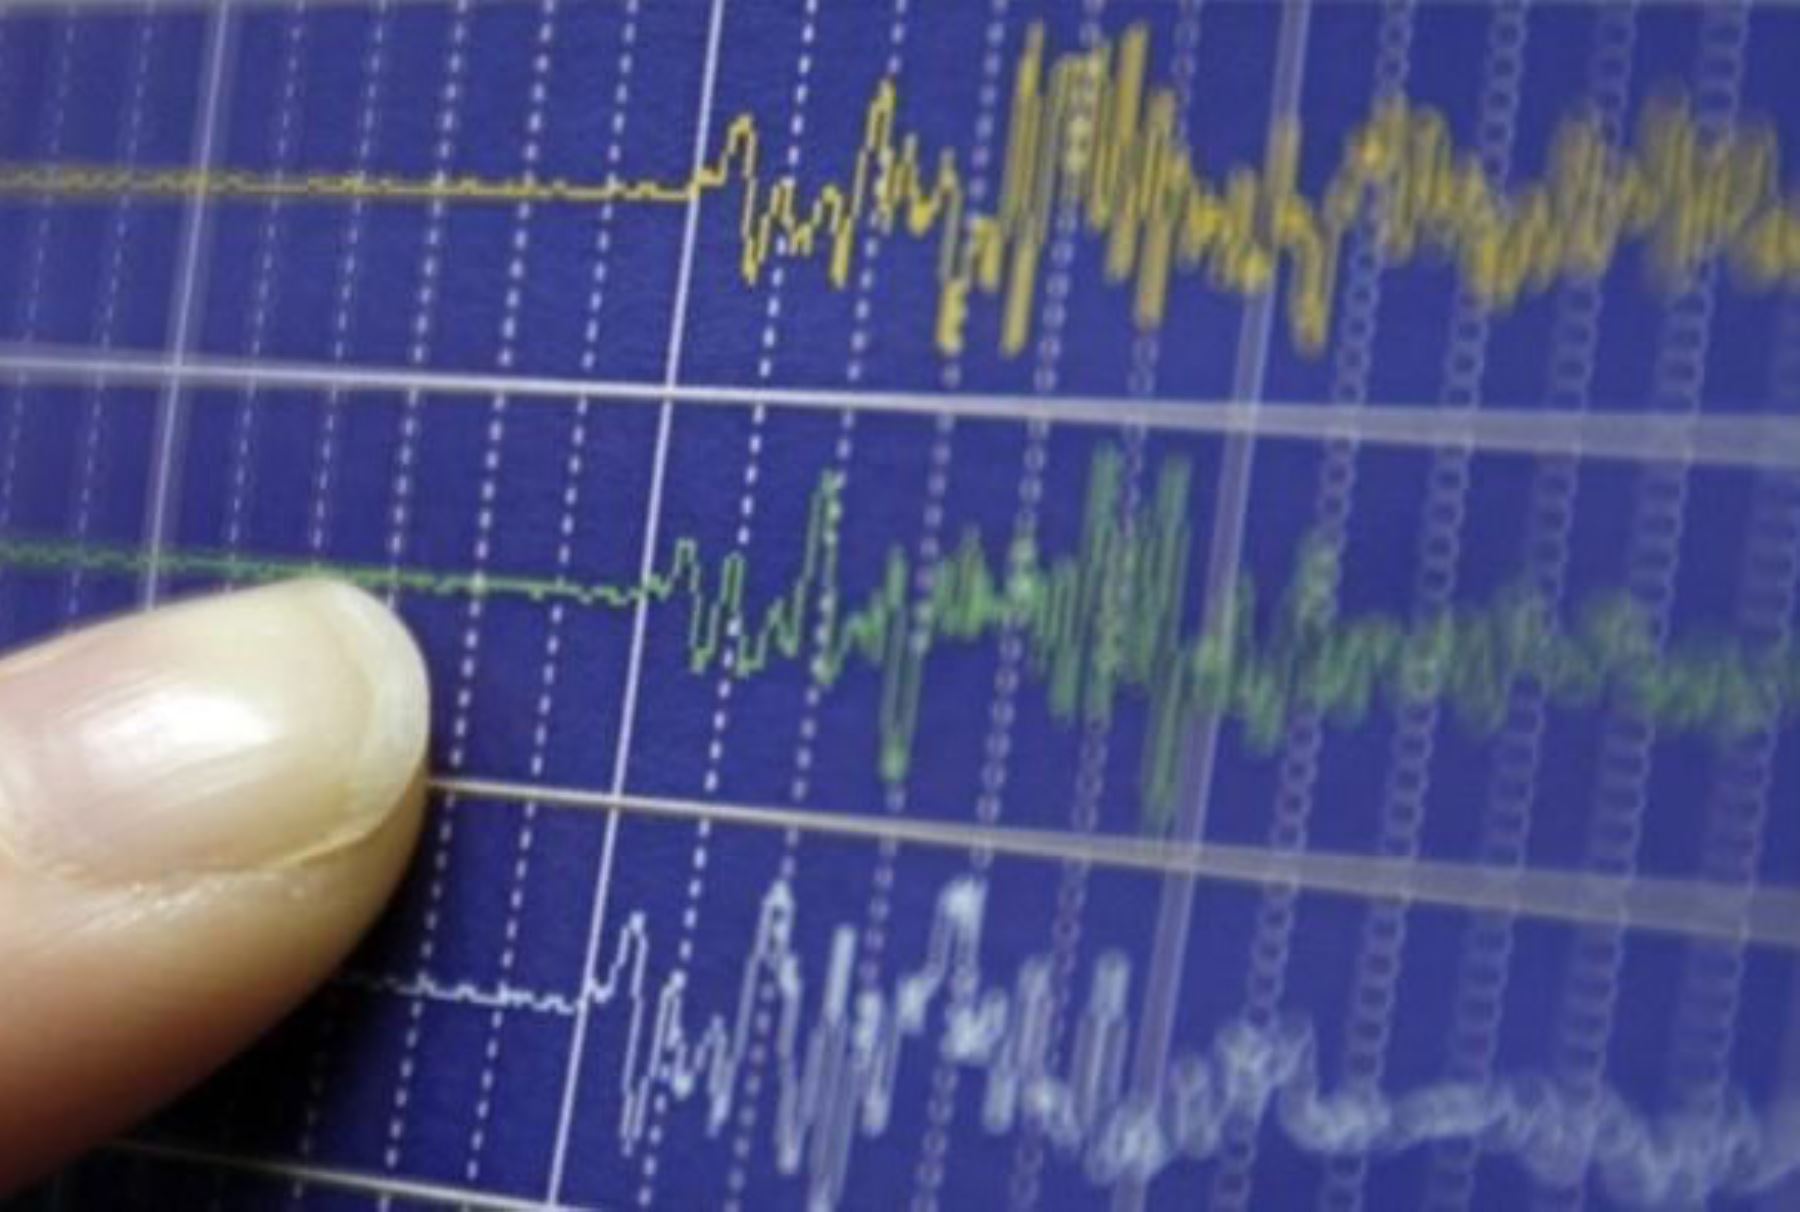 Dos sismos de moderada intensidad se registraron hoy en Moquegua y Piura,informó el IGP. ANDINA/Difusión